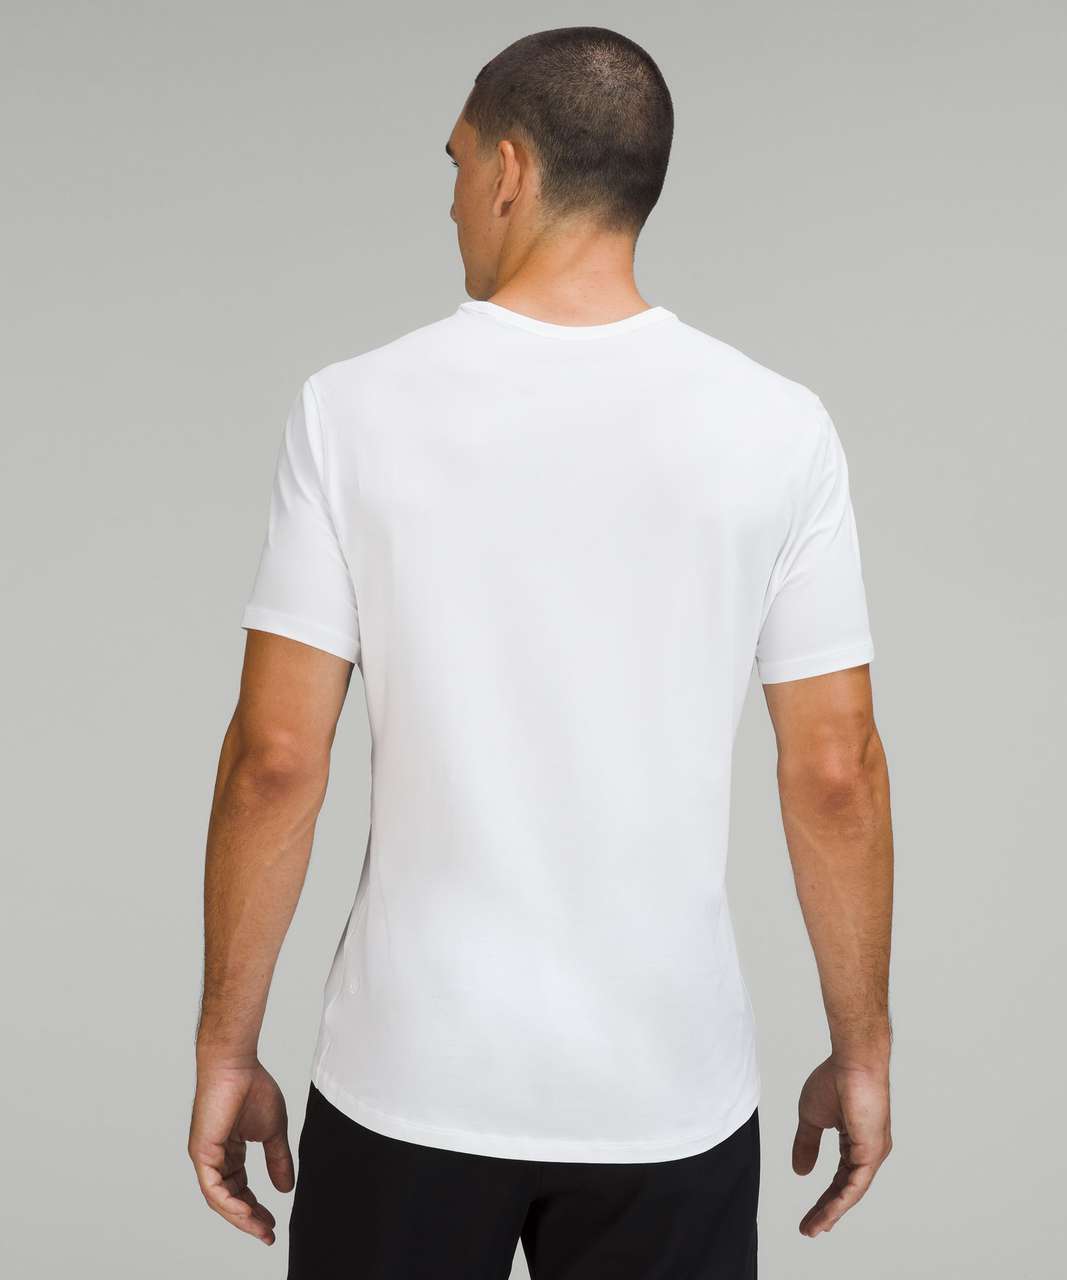 Lululemon 5 Year Basic T-Shirt *Houston - White